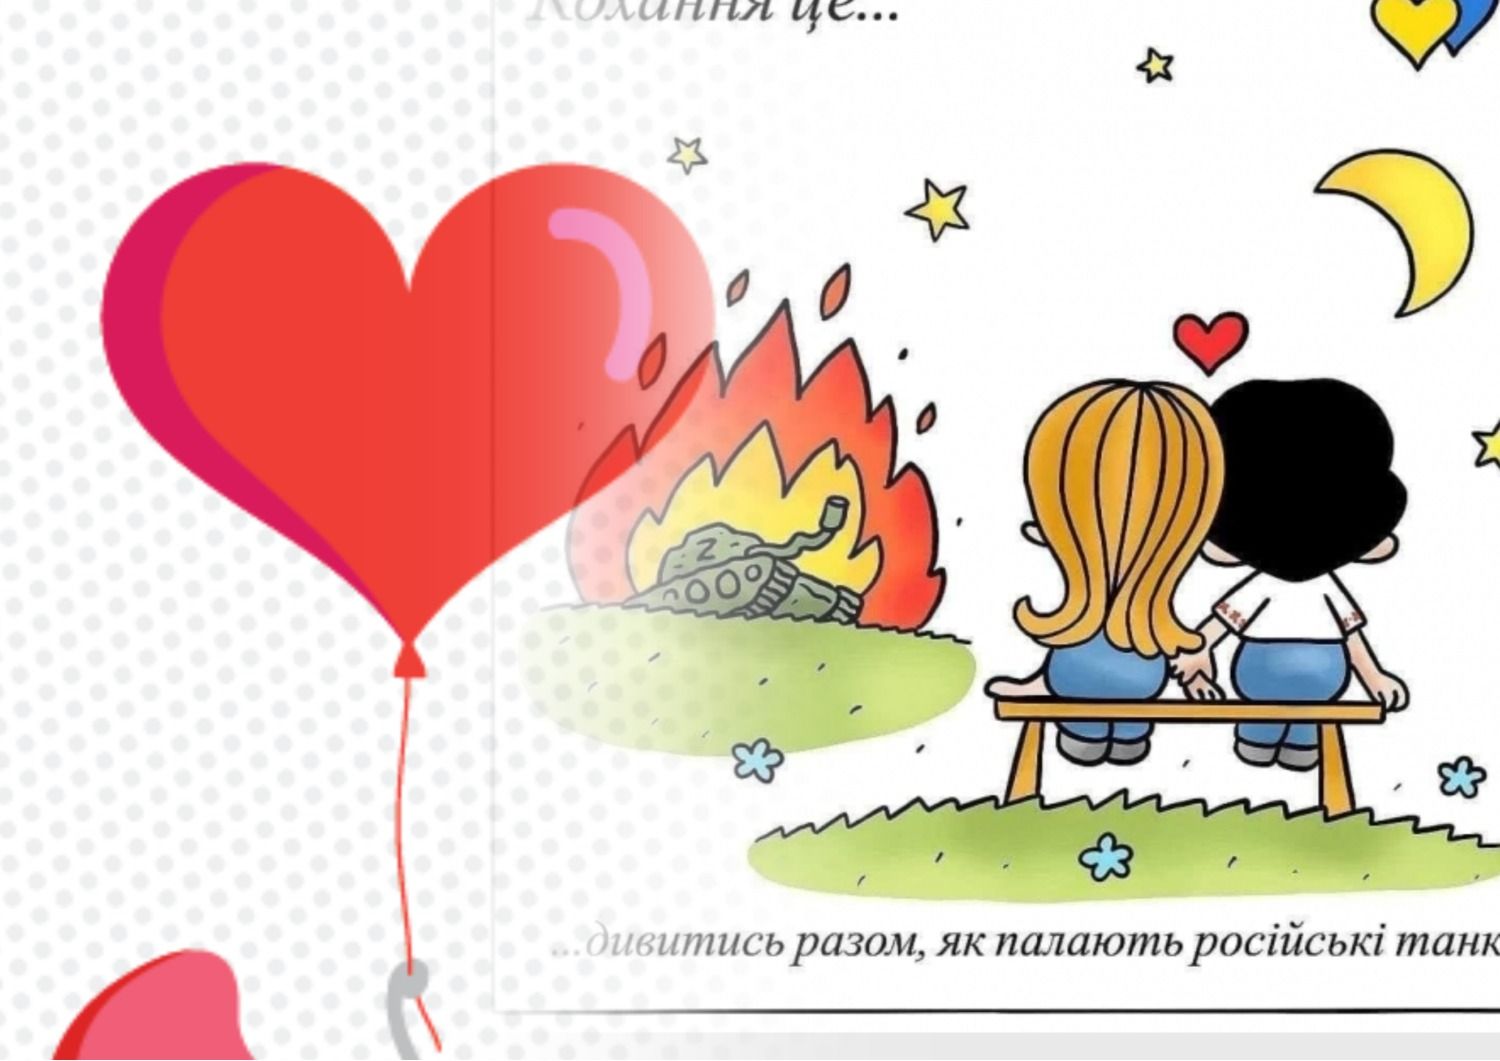 День святого Валентина - антисуржик - как правильно говорить по-украински о любви - Образование